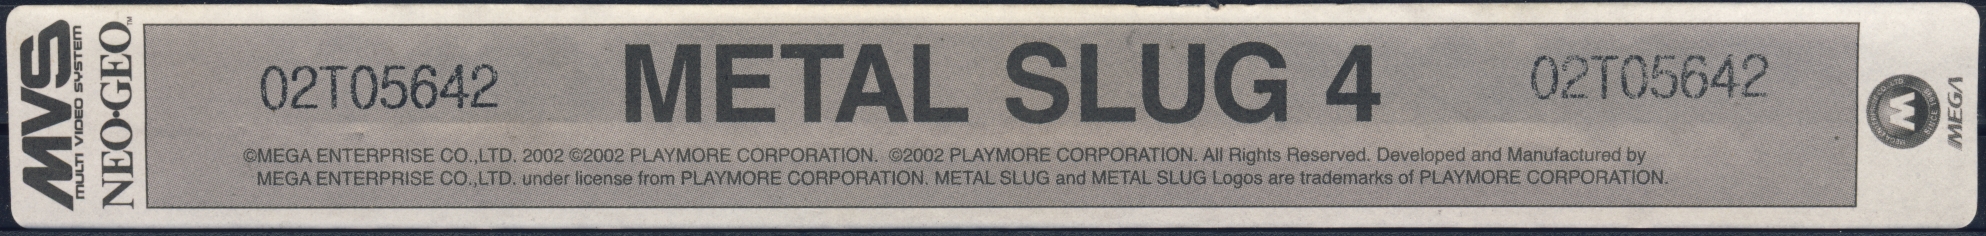 Metal slug 4 us label.jpg